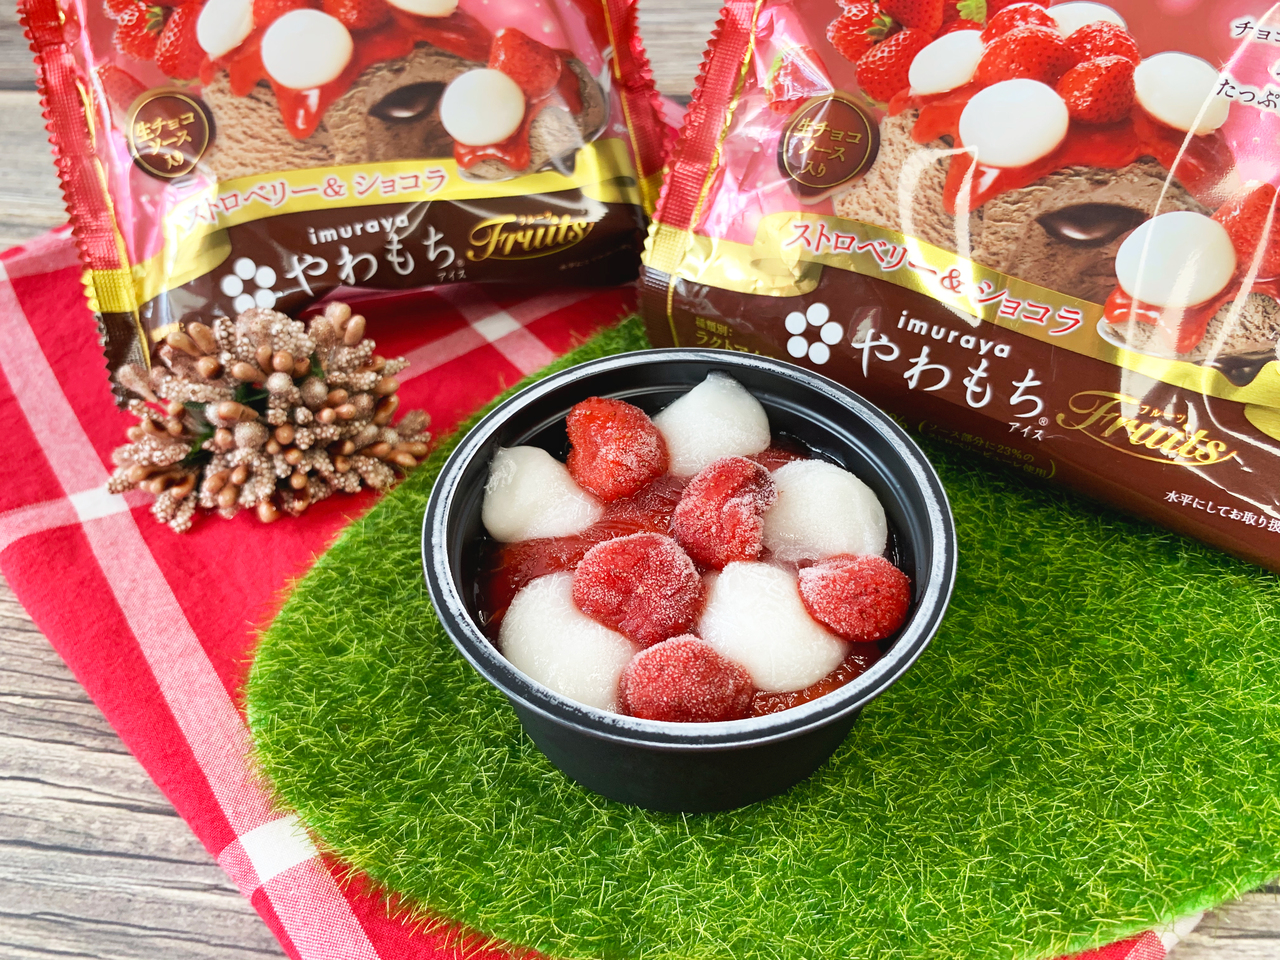 井村屋生巧克力草莓麻糬冰淇淋來了 7 11草莓季 登場 流行消費 生活 聯合新聞網